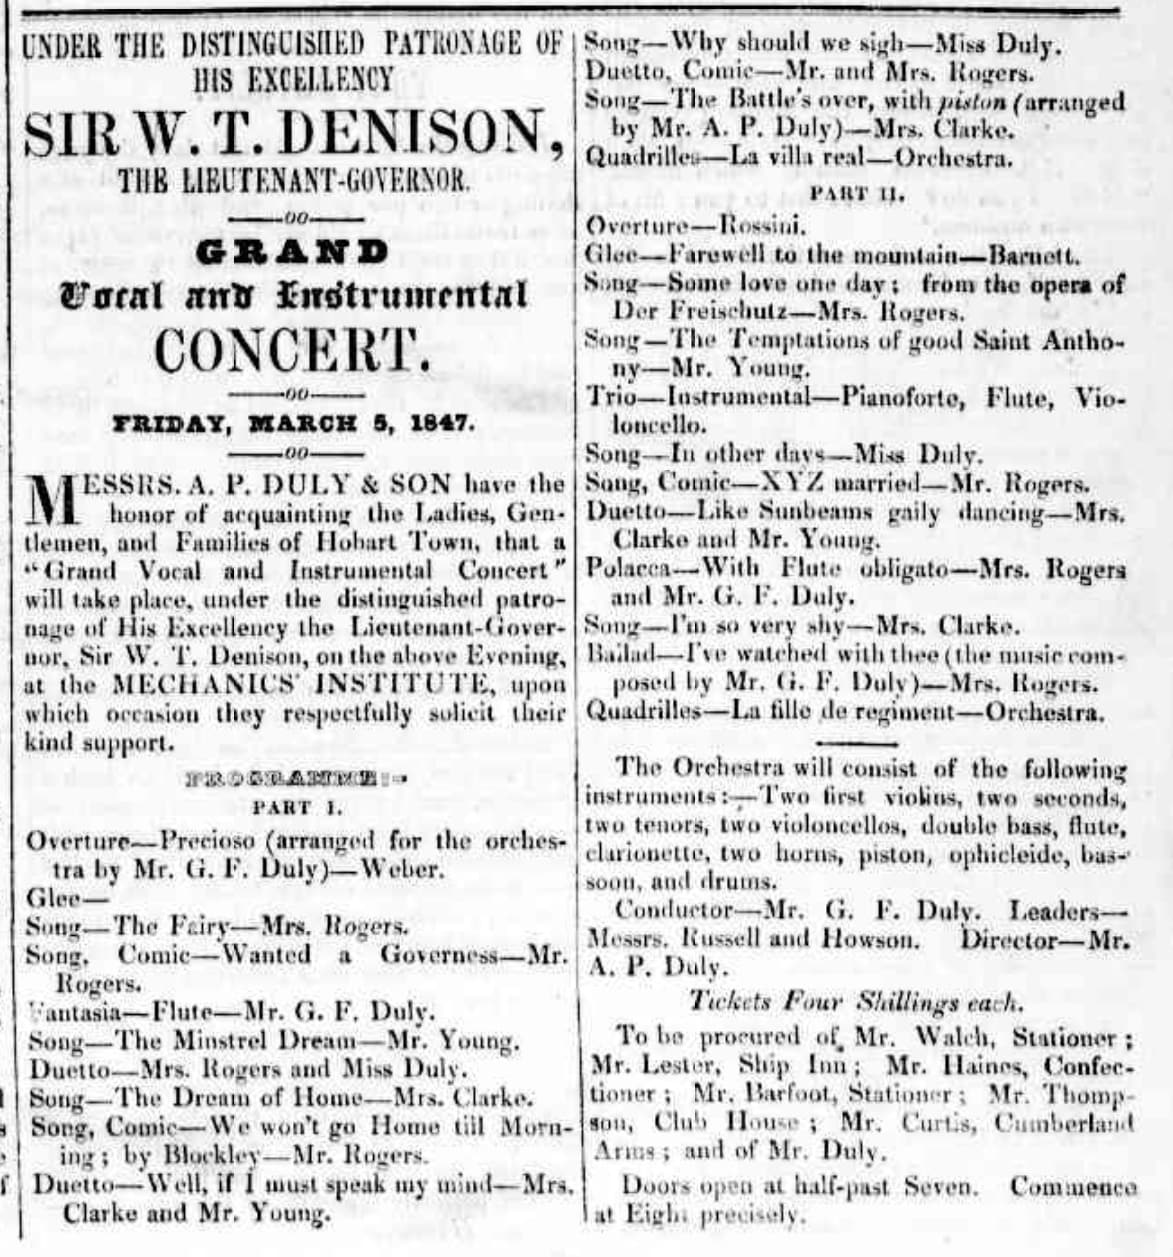 [Advertisement], The Britannia and Trades' Advocate (4 March 1847), 3 